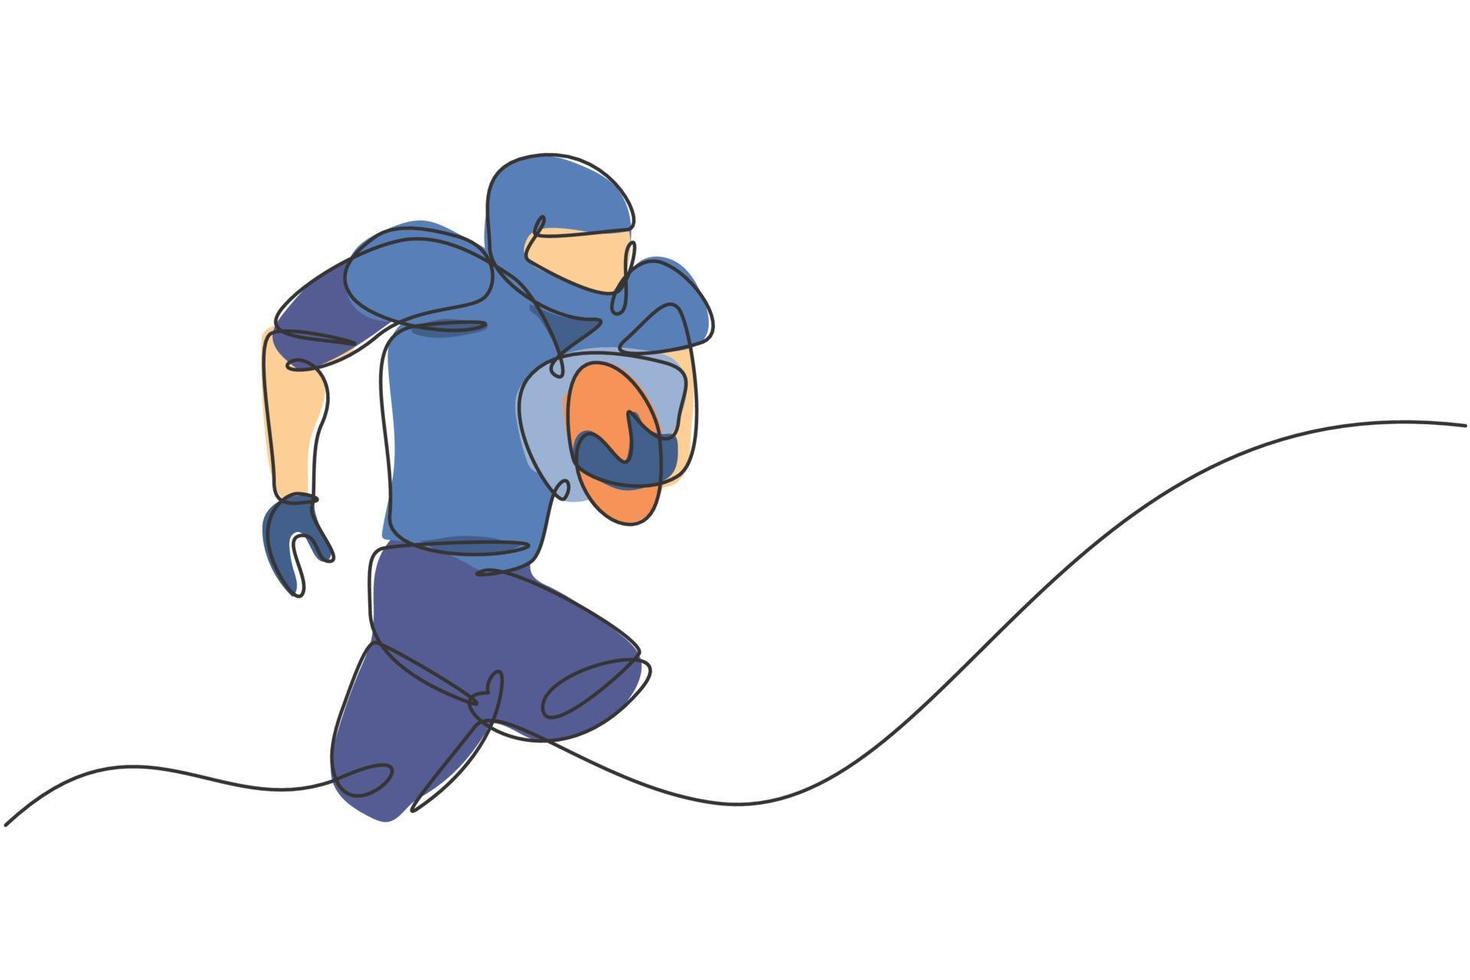 en kontinuerlig linjeteckning av ung muskulös man amerikansk fotbollsspelare springer och håller bollen för konkurrens affisch. sport lagarbete koncept. dynamisk enda rad rita design vektorillustration vektor